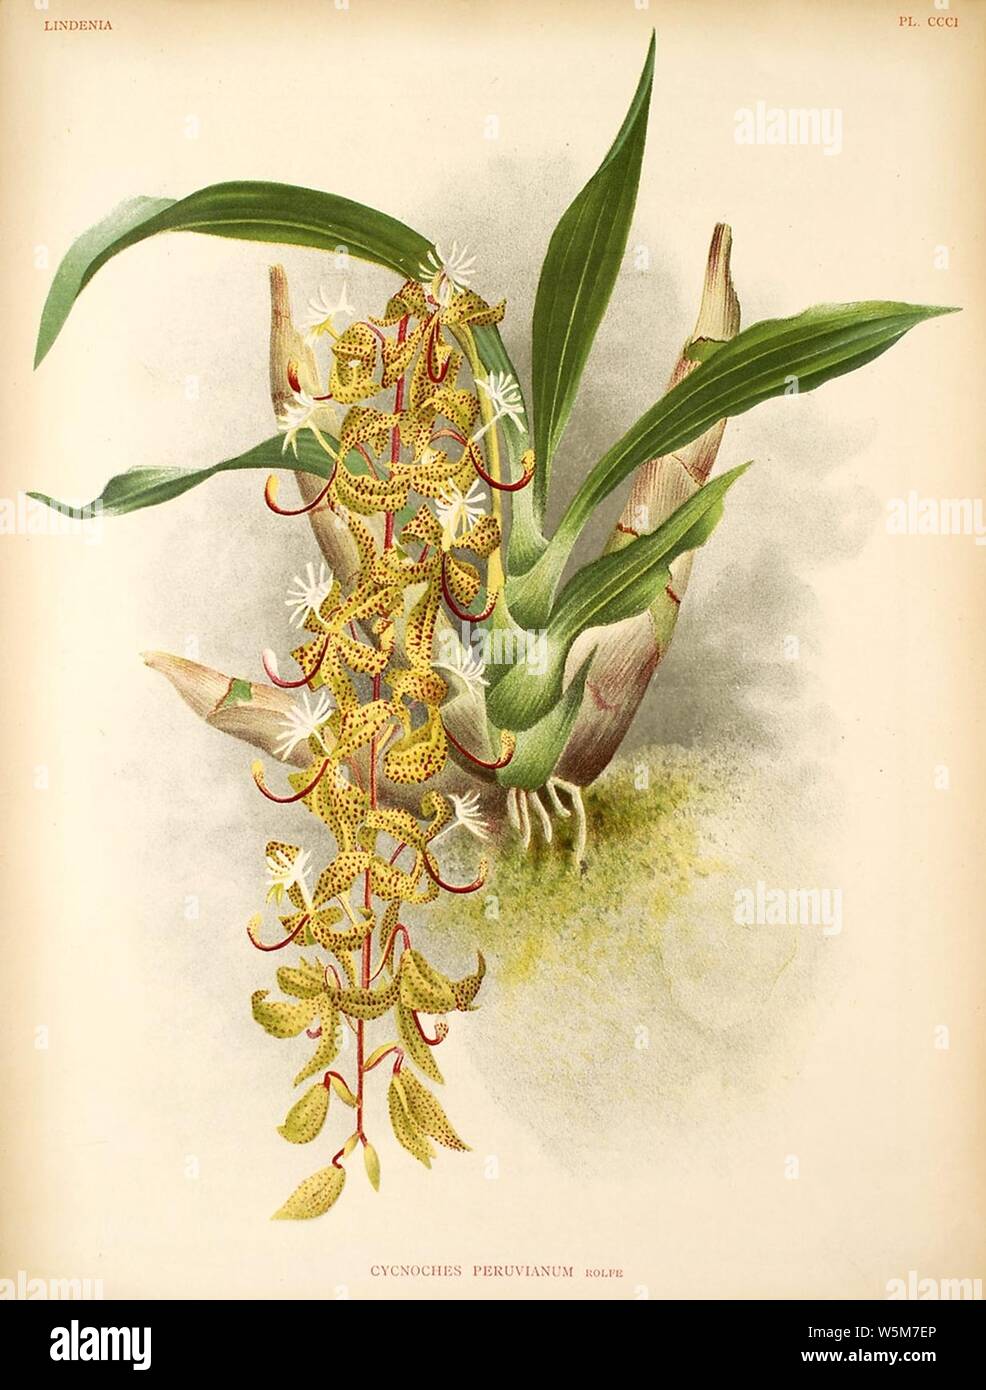 Cycnoches peruvianum - Lindenia Vol.7 plate 301 (1891-1892). Stock Photo